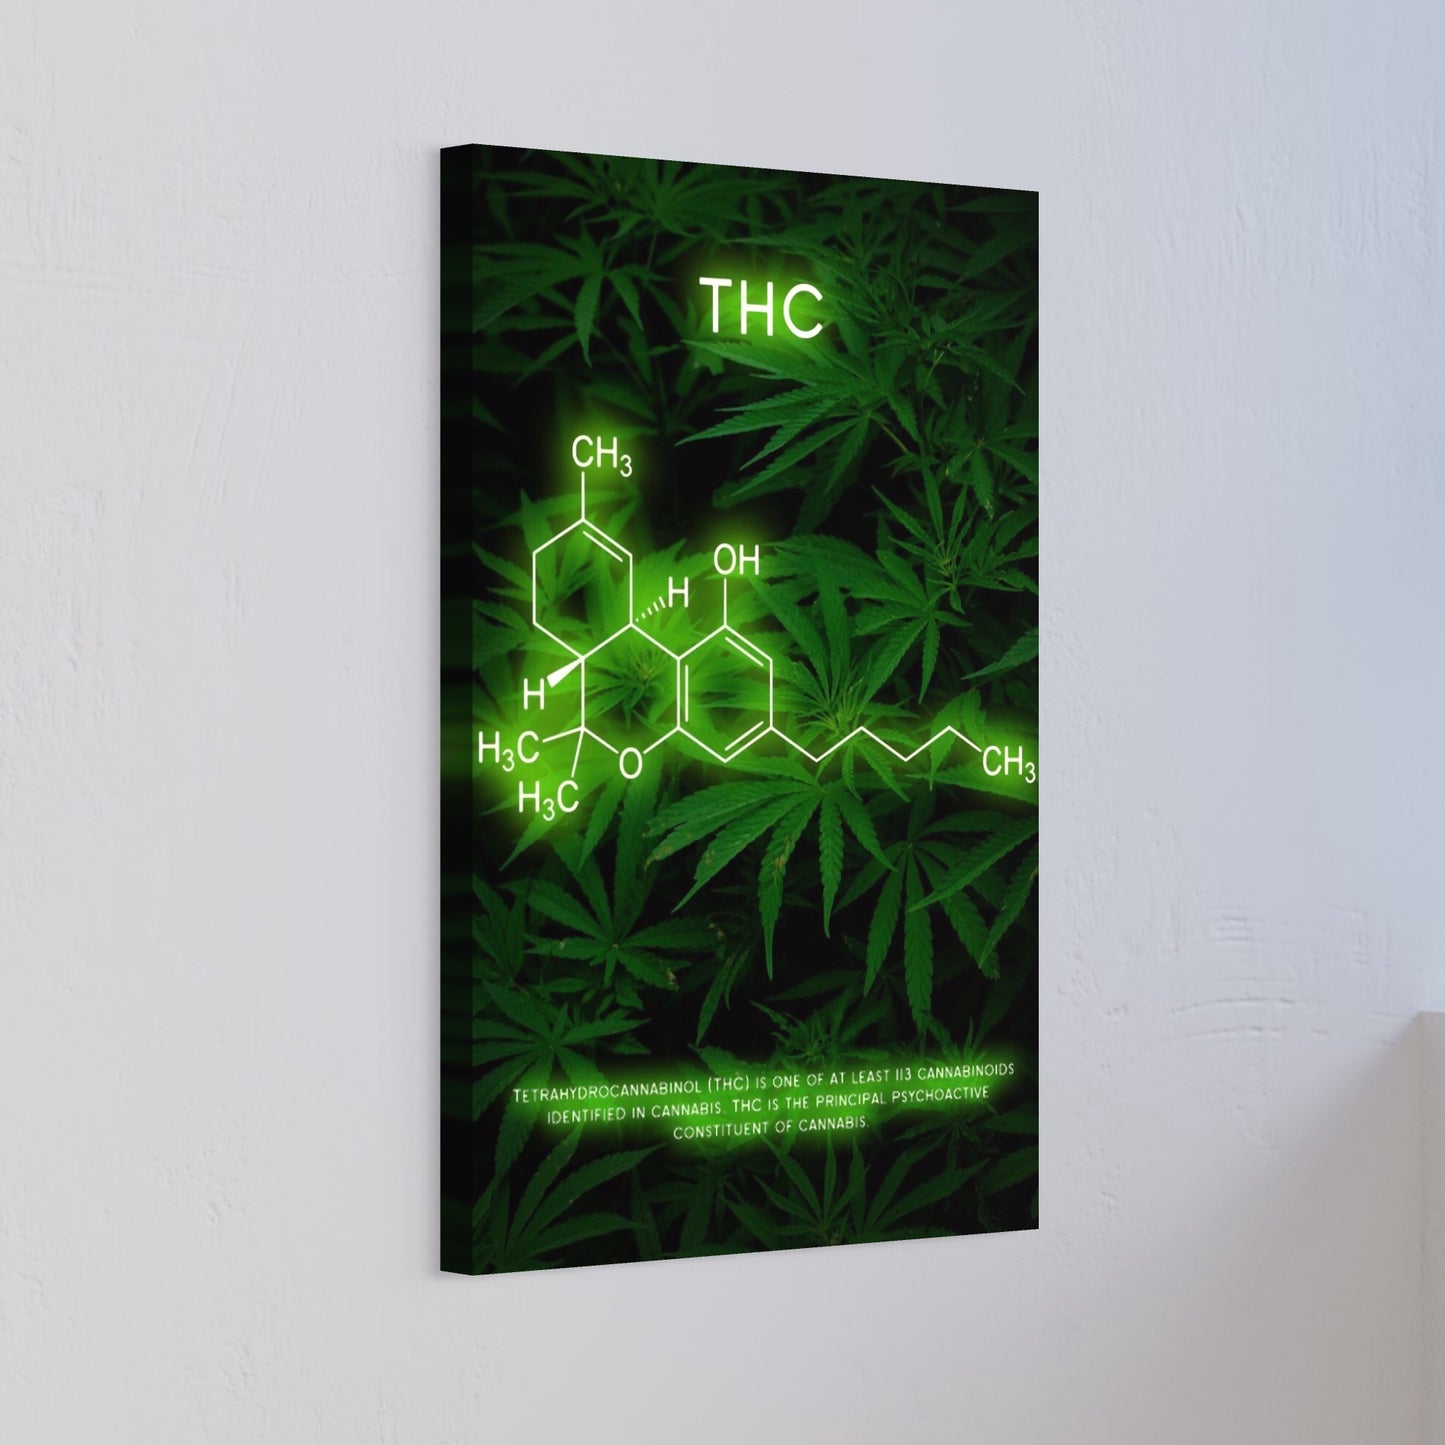 THC cannabis